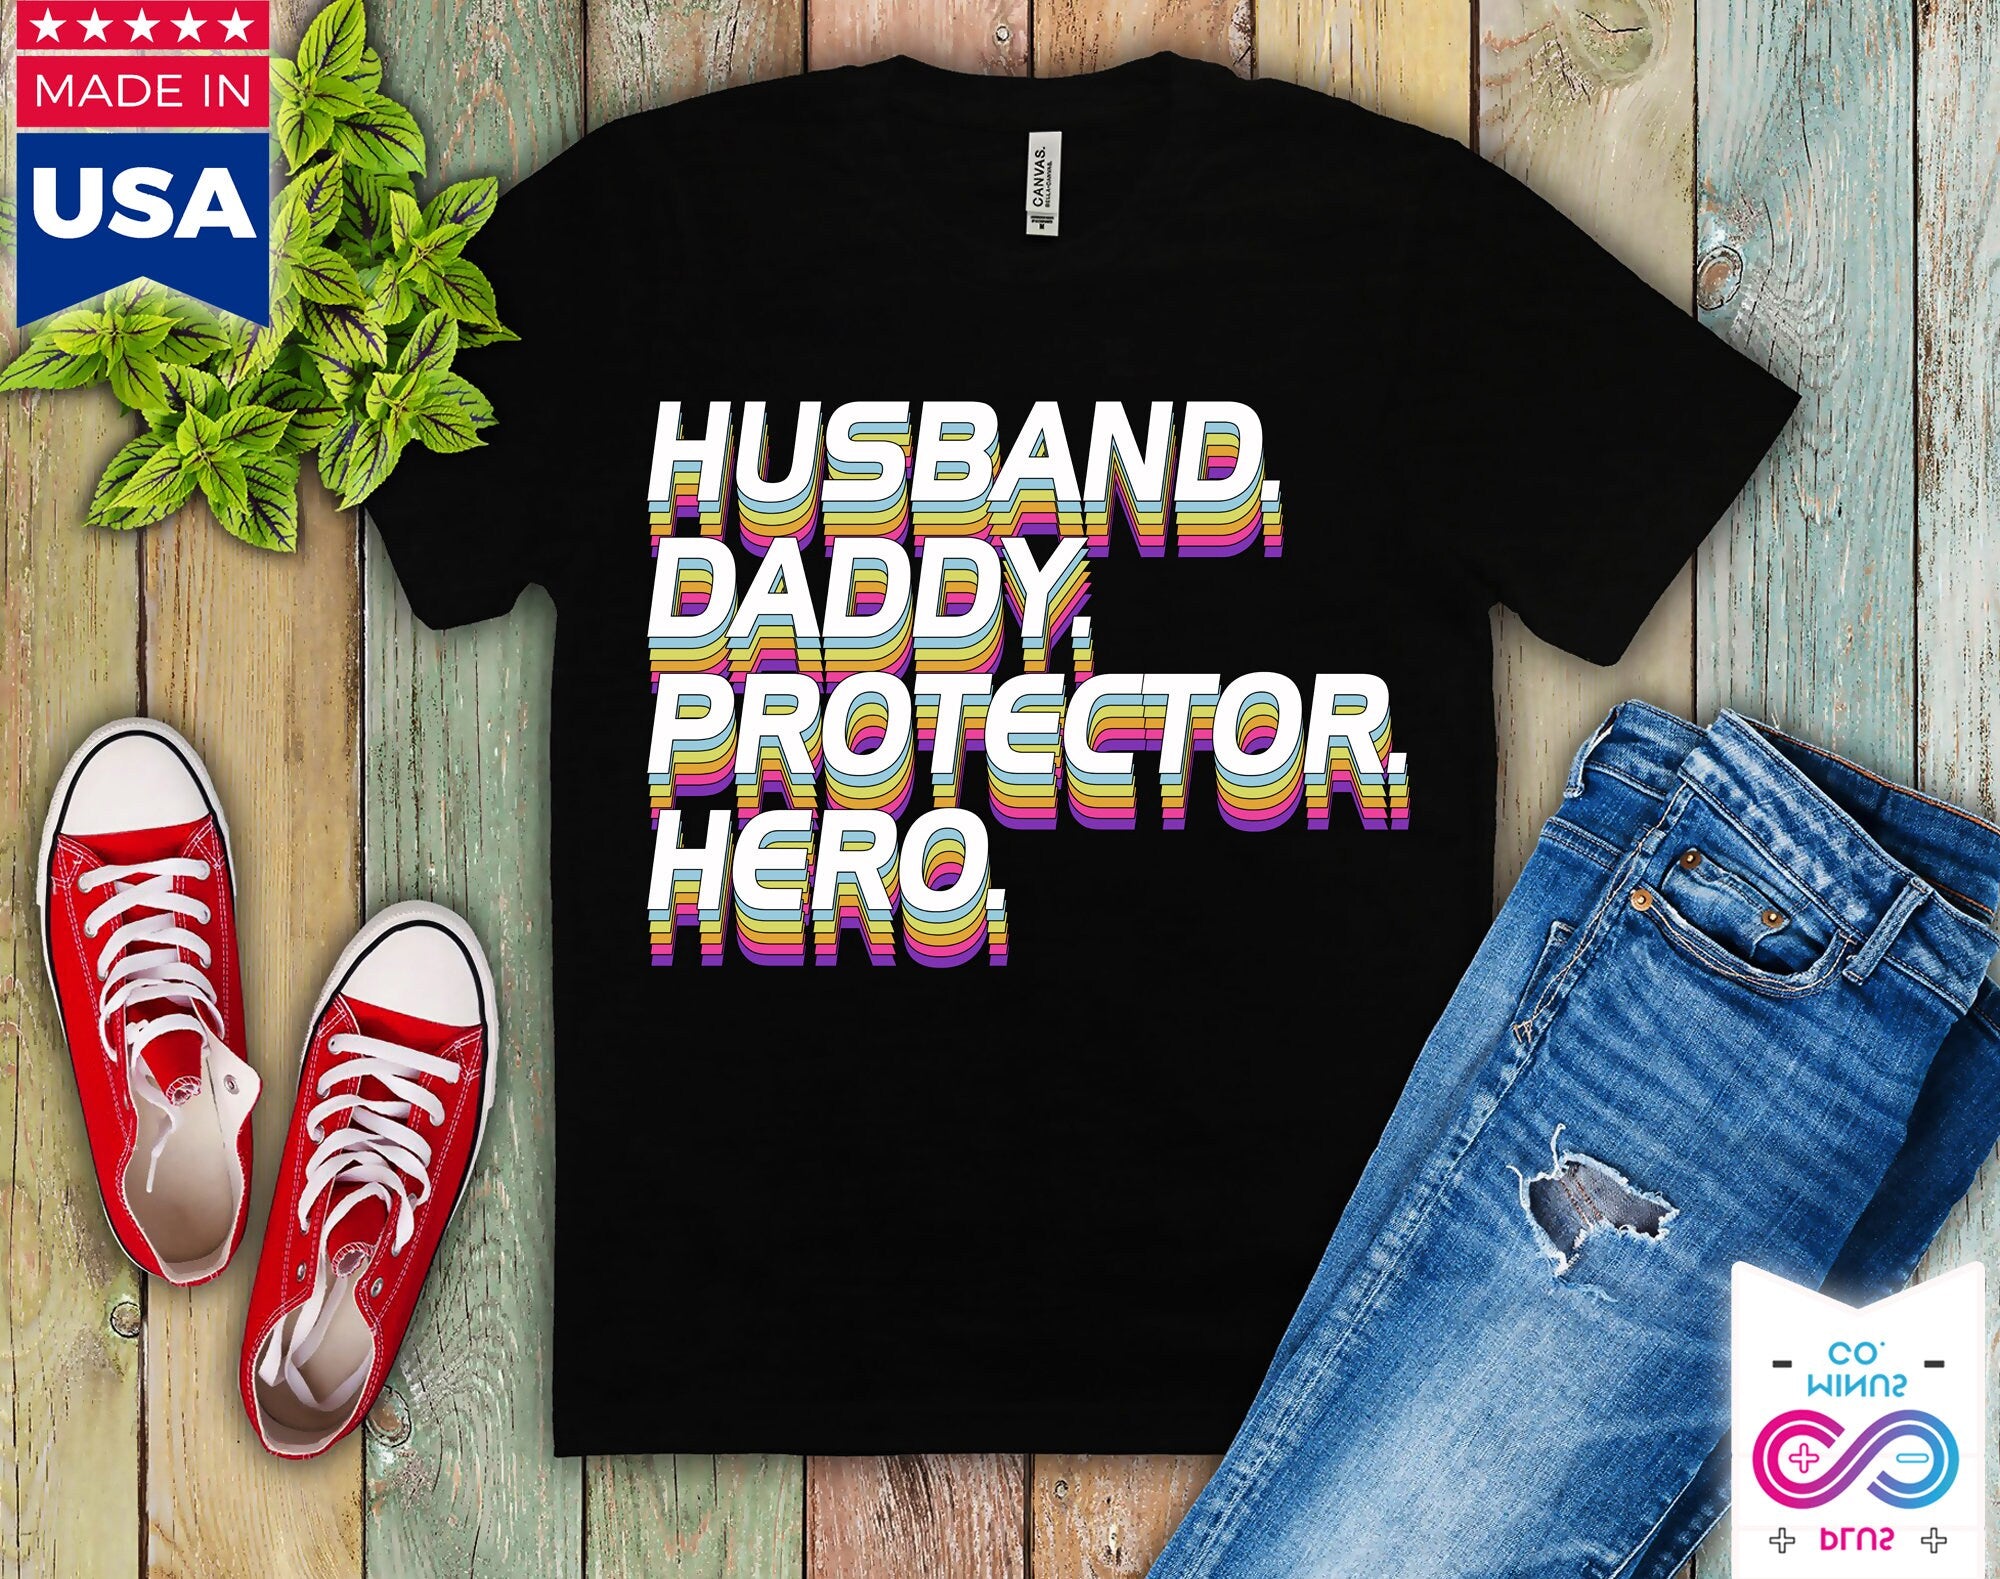 Tričko Manžel Daddy Protector Hero, dárek ke Dni otců | Manžel. Tatínek. Ochránce. Hrdinská košile | Legrační košile Muži - Košile manžela - Táta - plusminusco.com